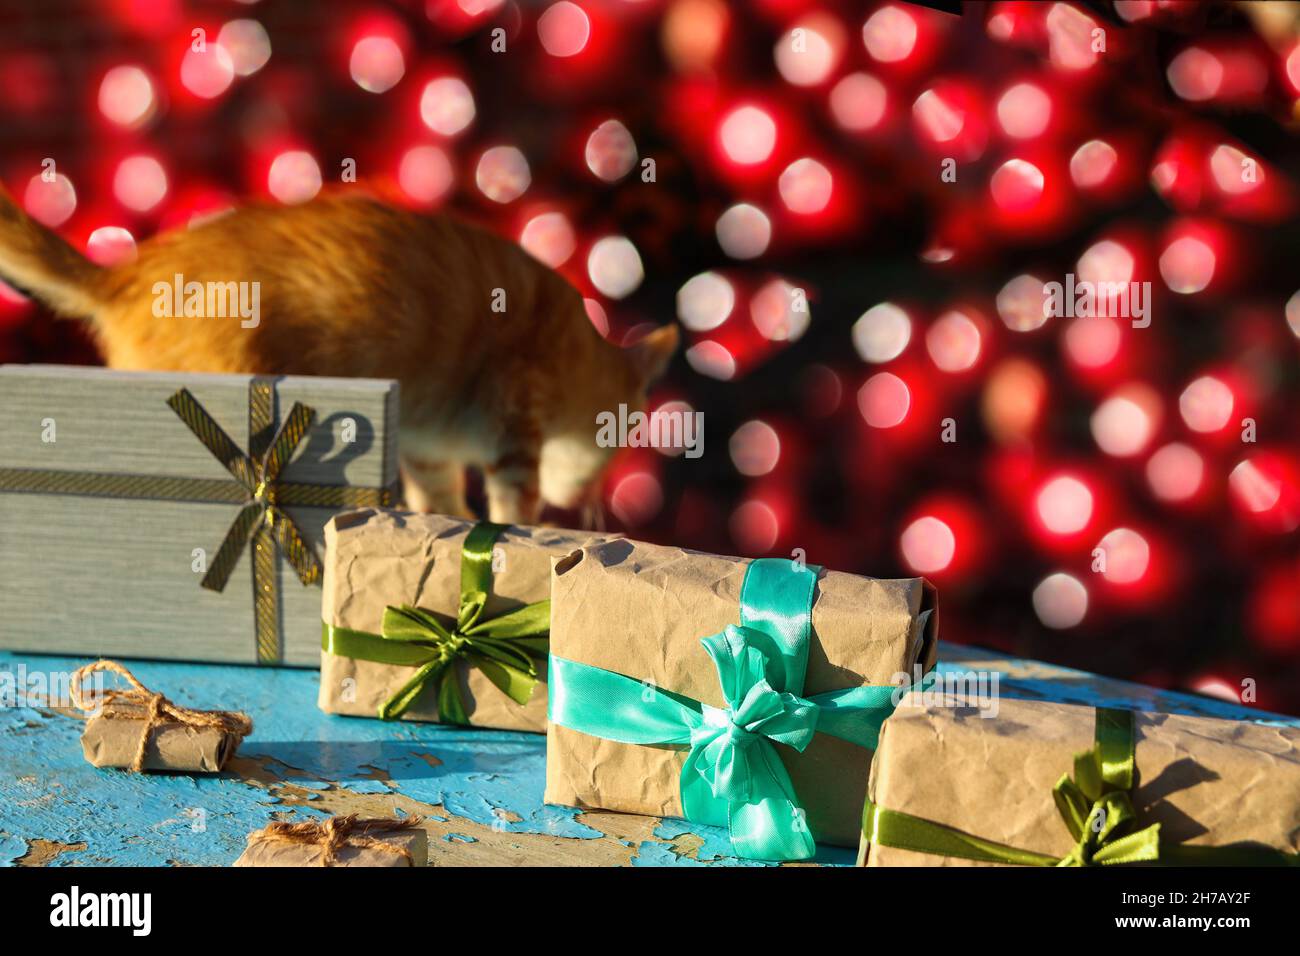 Ingwer Katze laufen weg in der Nähe eingewickelten Handwerk vintage Geschenkboxen auf blauem alten Holz Hintergrund. Geschenk-Box in Bastelpapier mit grüner Schleife mit Schatten Stockfoto